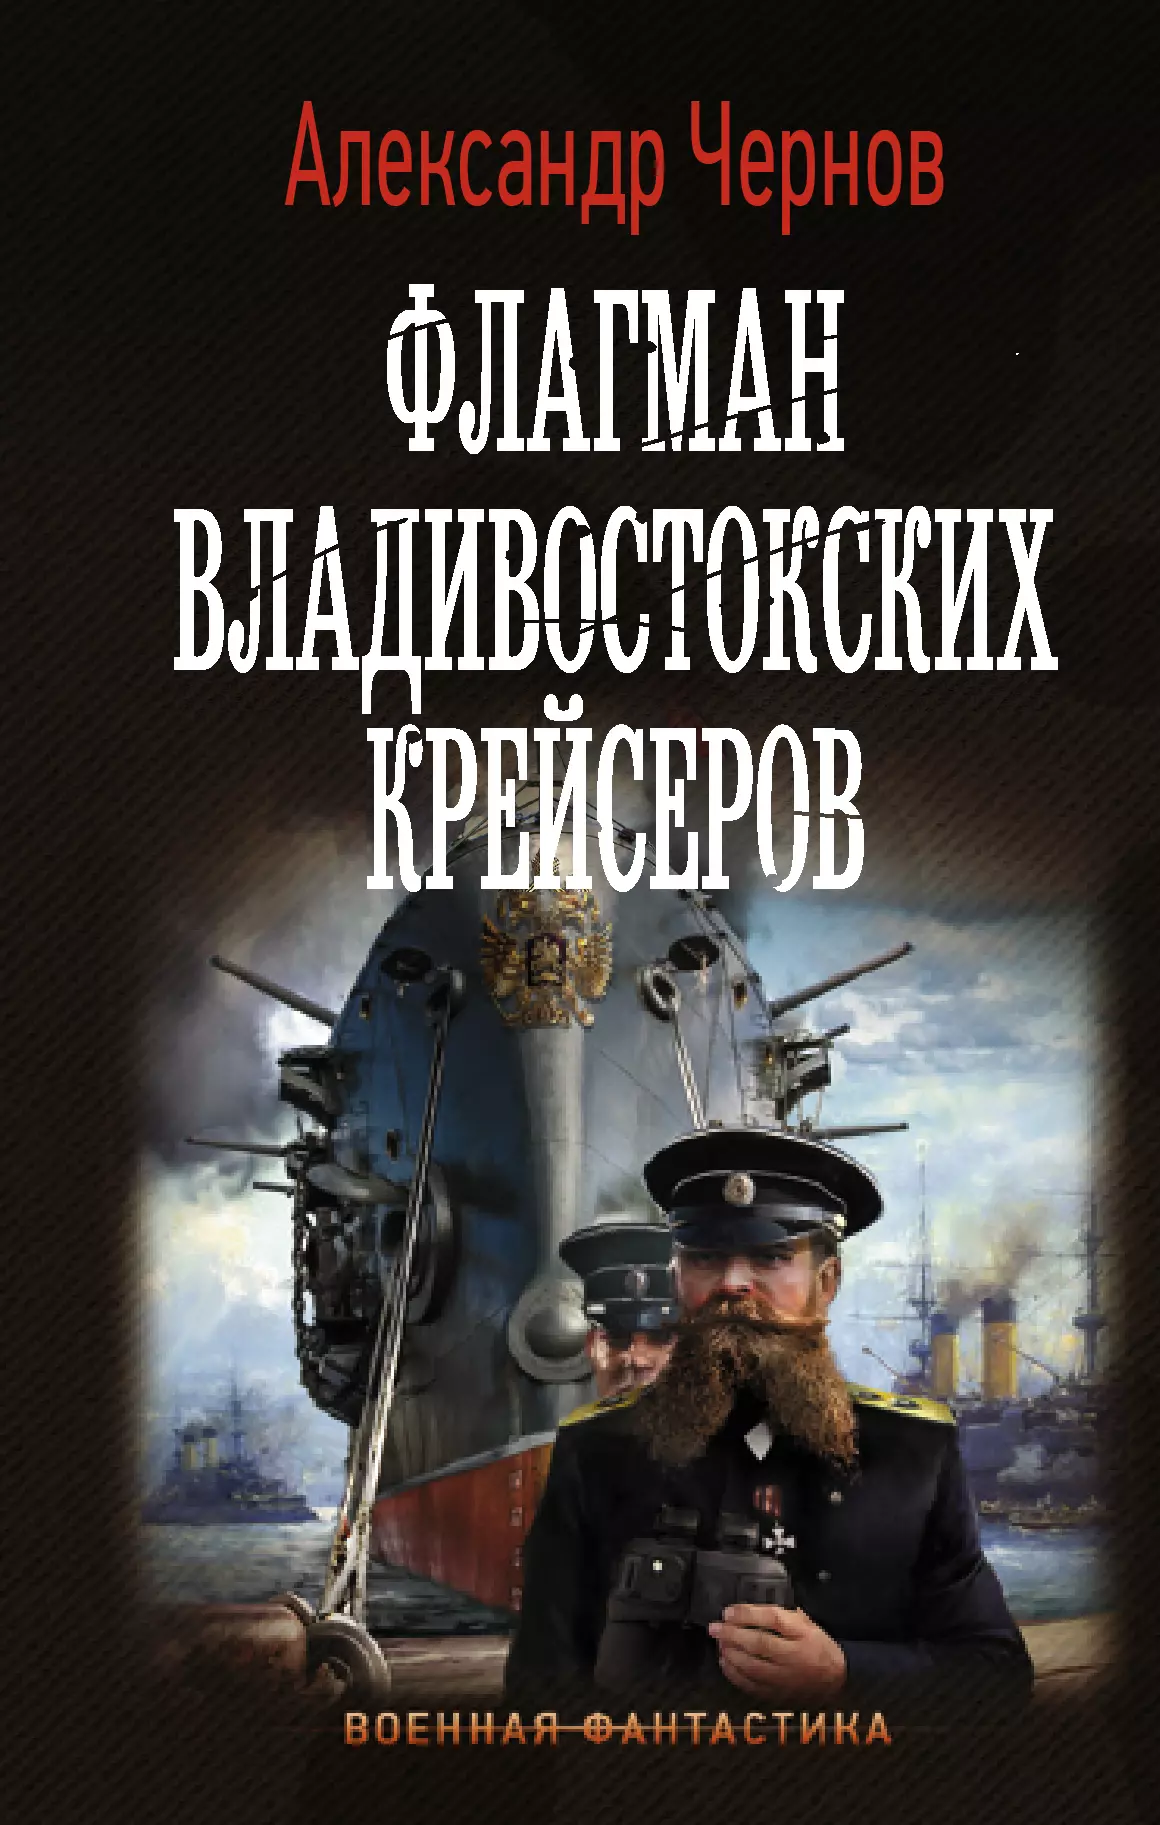 Чернов Александр Борисович - Флагман владивостокских крейсеров